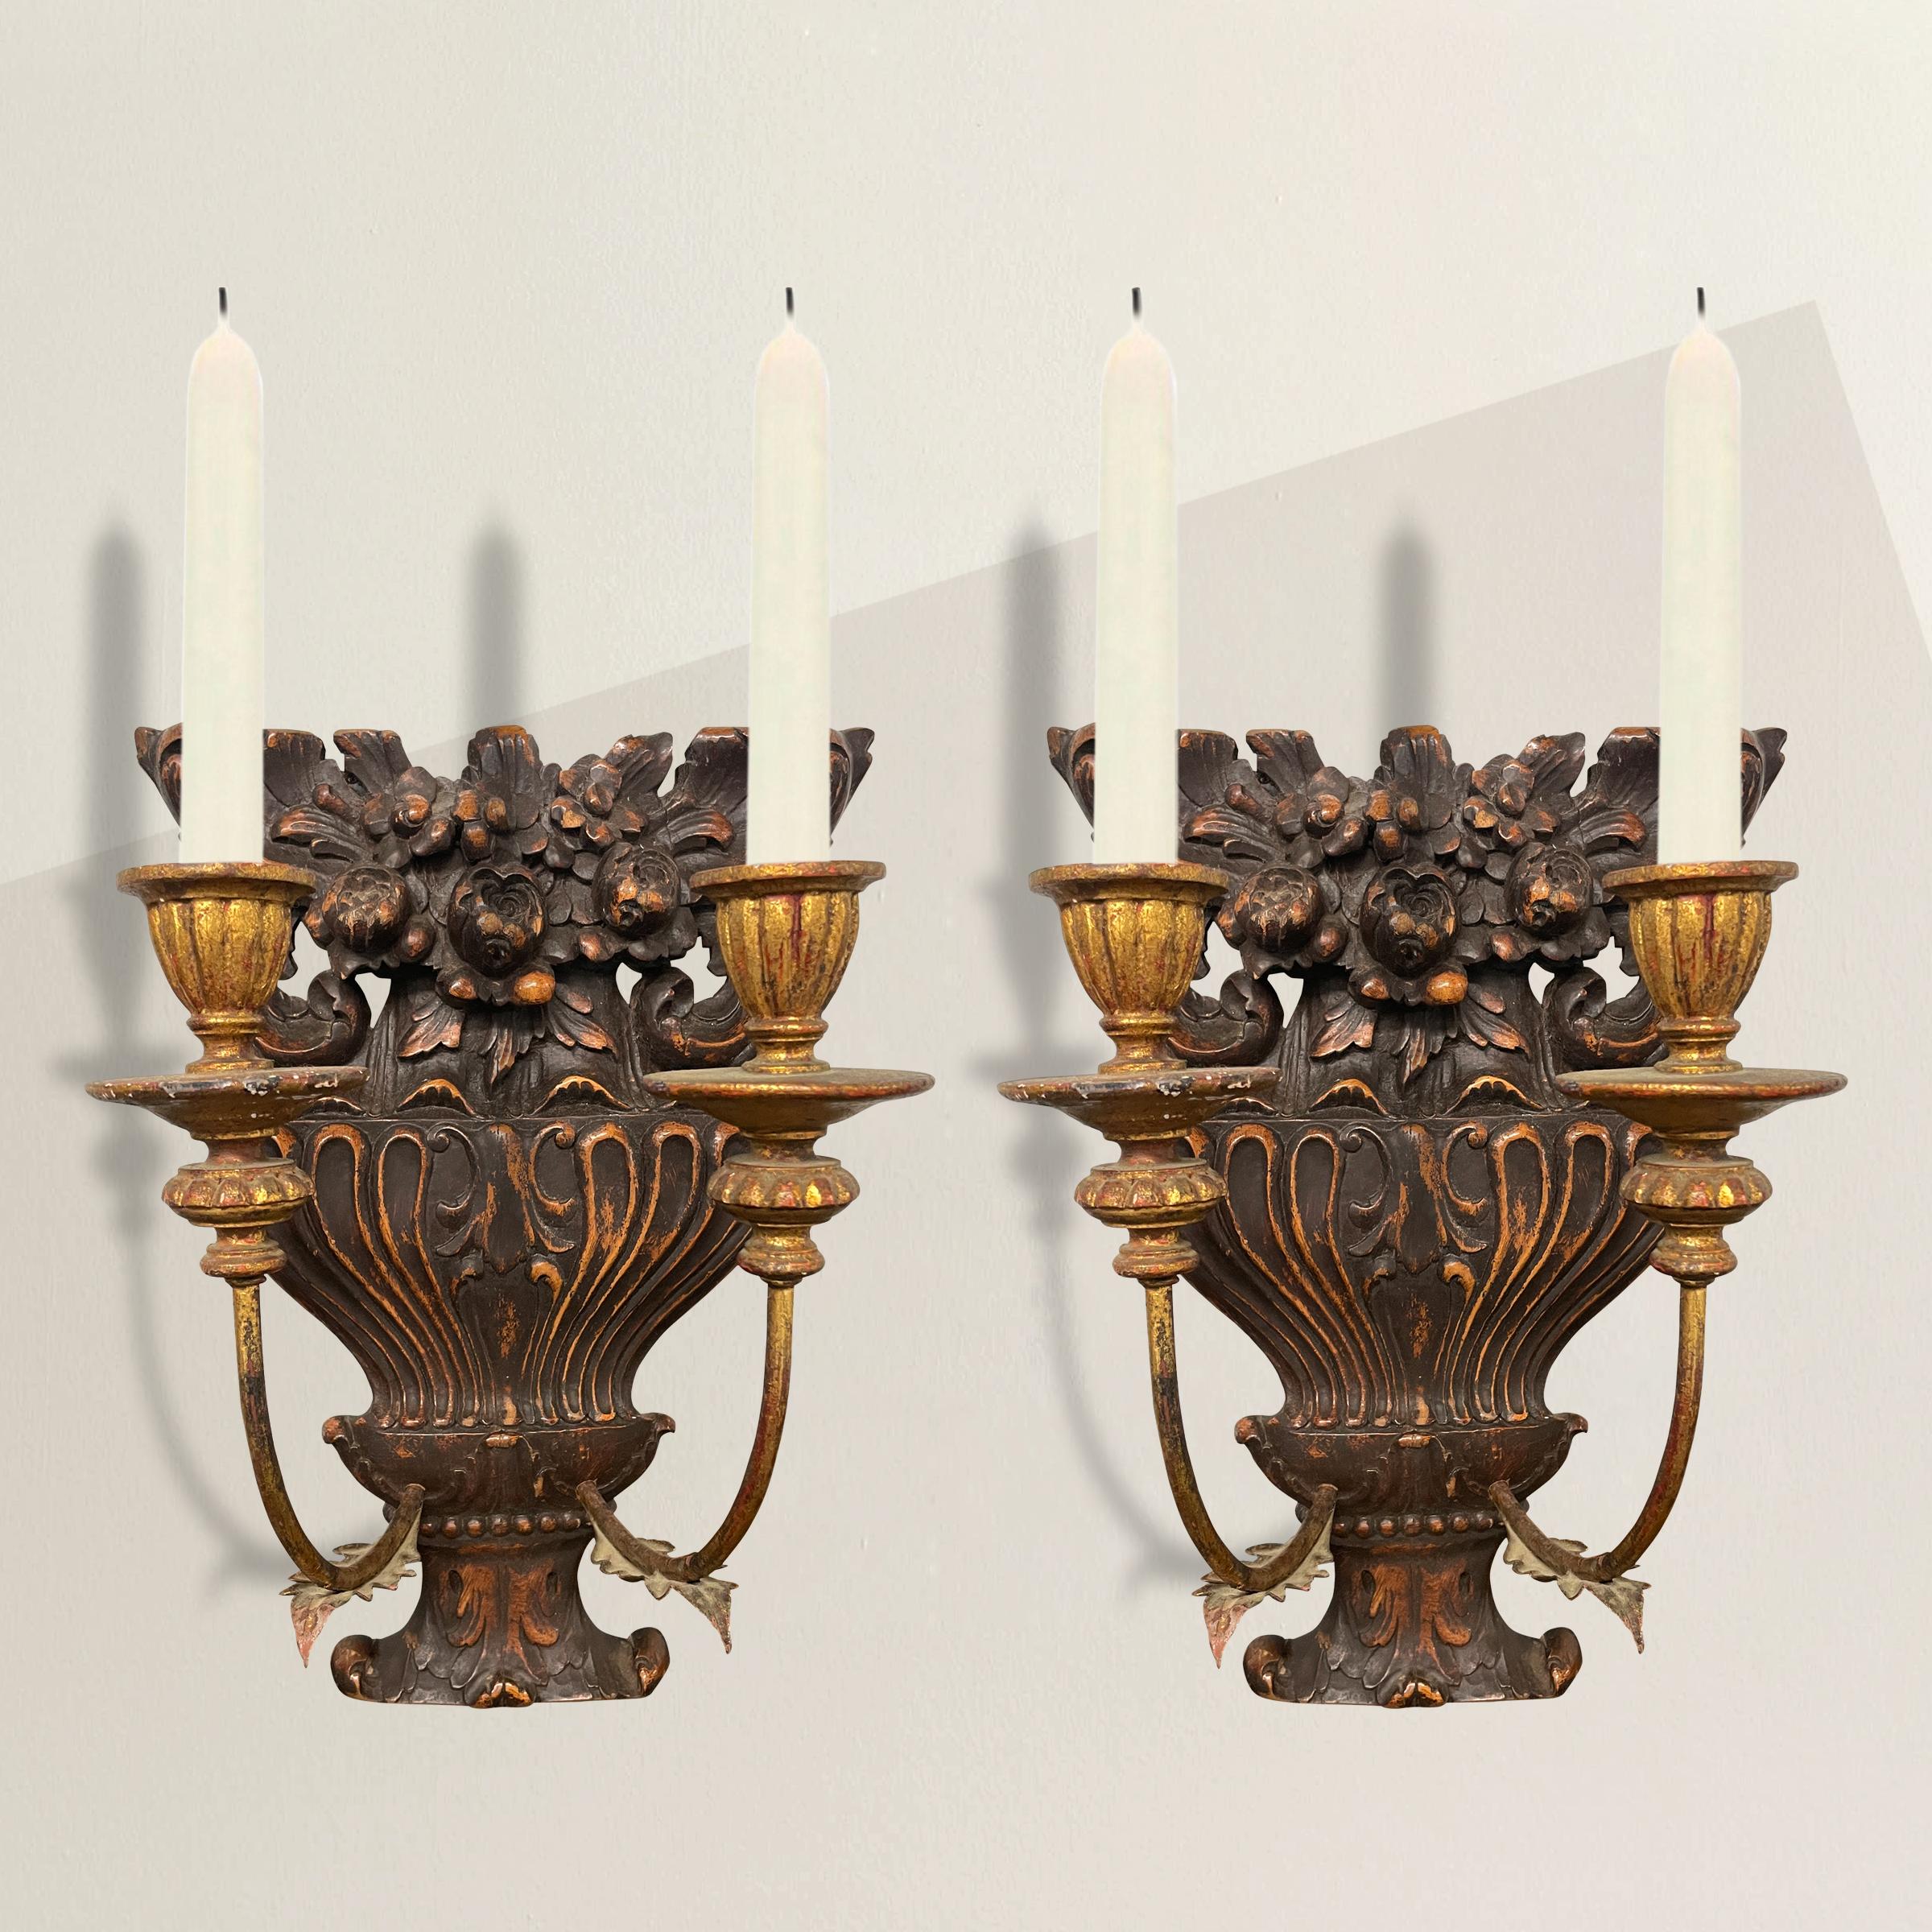 Ein bezauberndes Paar französischer Kerzenleuchter aus der Mitte des 19. Jahrhunderts mit geschnitzten, blumengeschmückten Urnenplatten und vergoldeten Metall- und Holzarmen. Die Wandleuchten können gegen eine zusätzliche Gebühr elektrifiziert